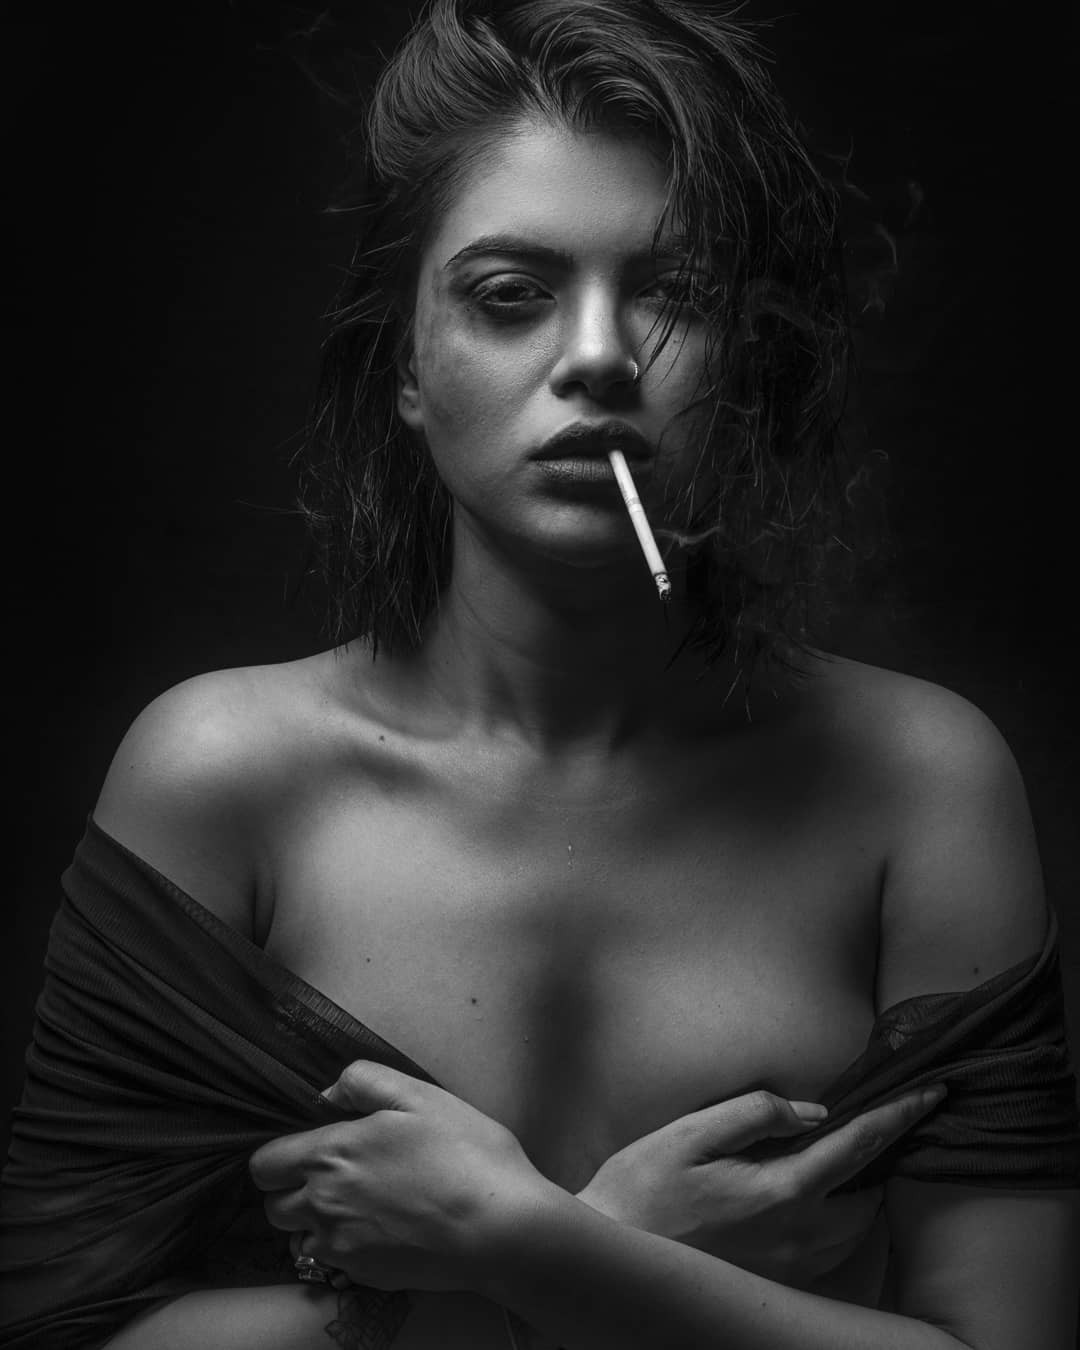 Rhea Insha Instagram, Blanco y negro, Fotografía de naturaleza muerta: Fotografía de retrato,  Sesión de fotos,  Modelos calientes de Instagram  